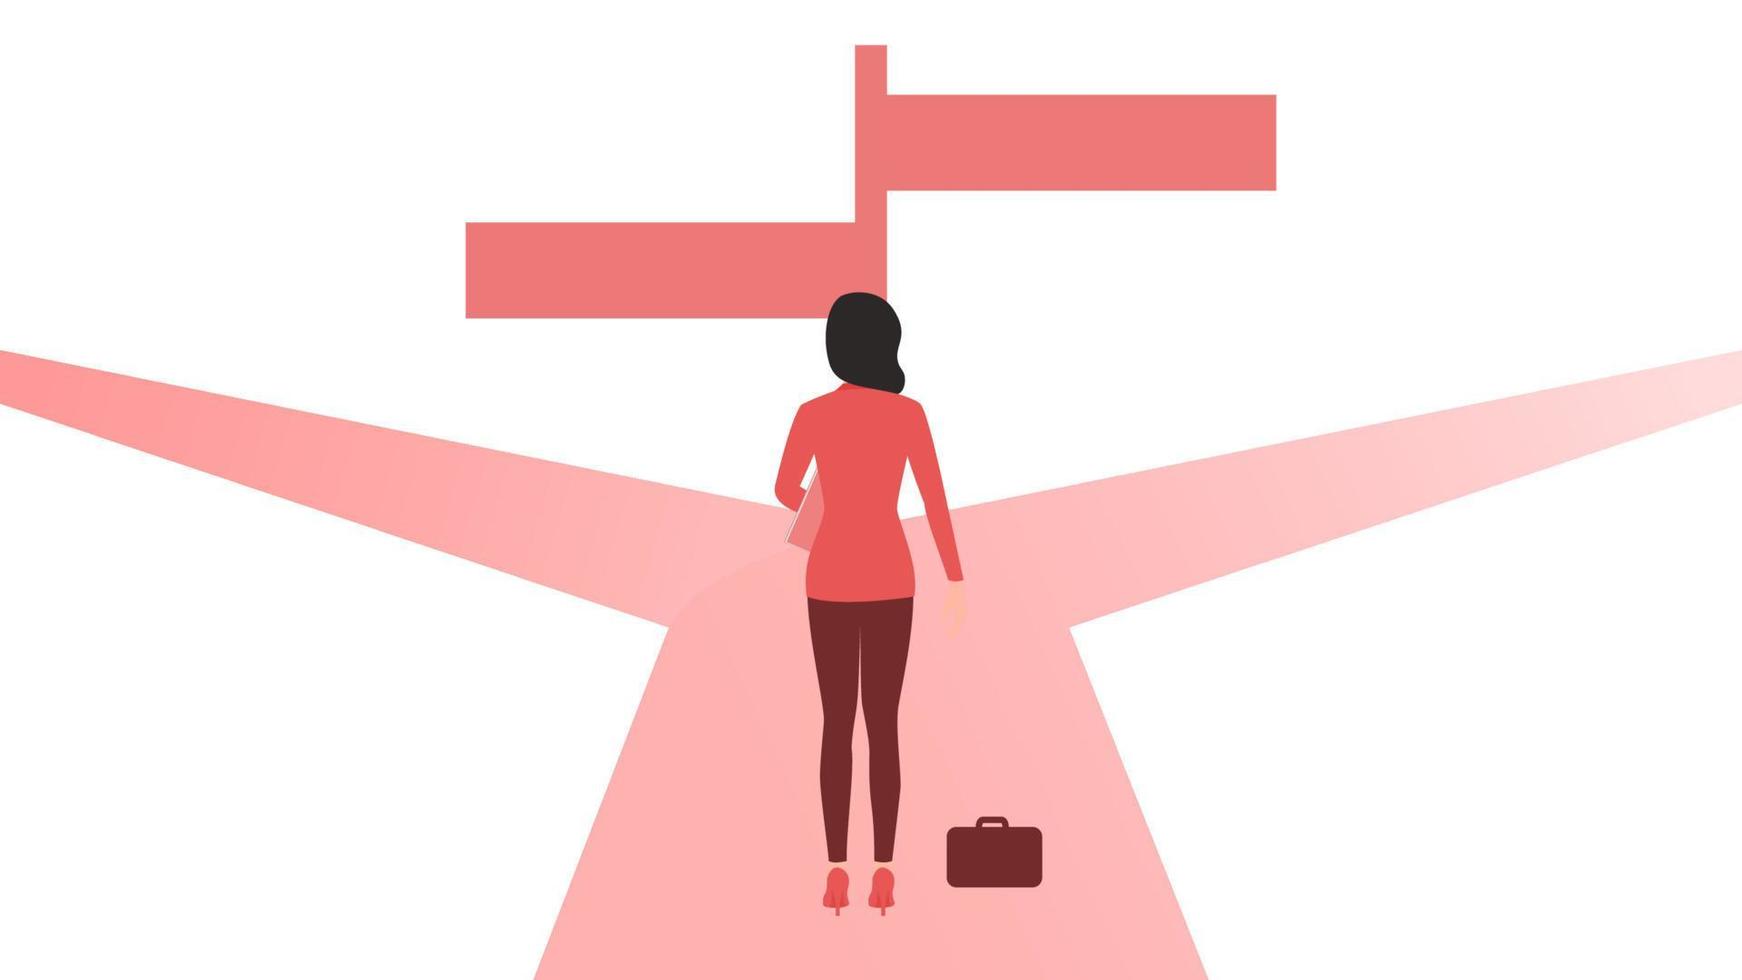 vrouw op kruispunt met bord. besluitvorming karakter illustratie, opstarten bedrijf karakter vectorillustratie. vector